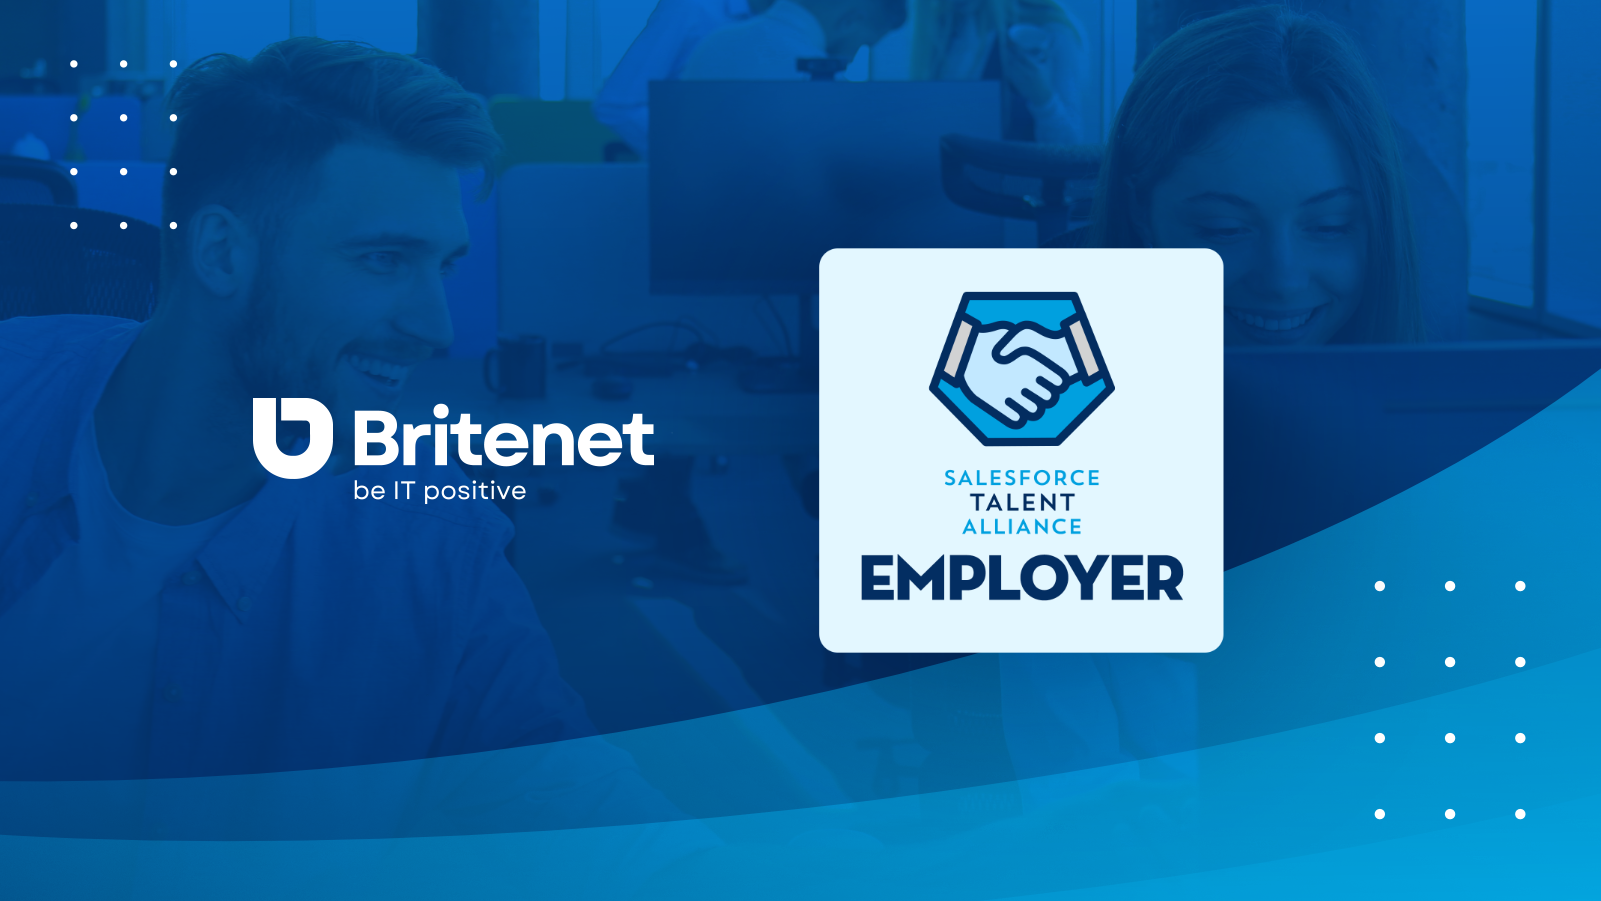 Britenet an official partner of the Salesforce Talent Alliance program